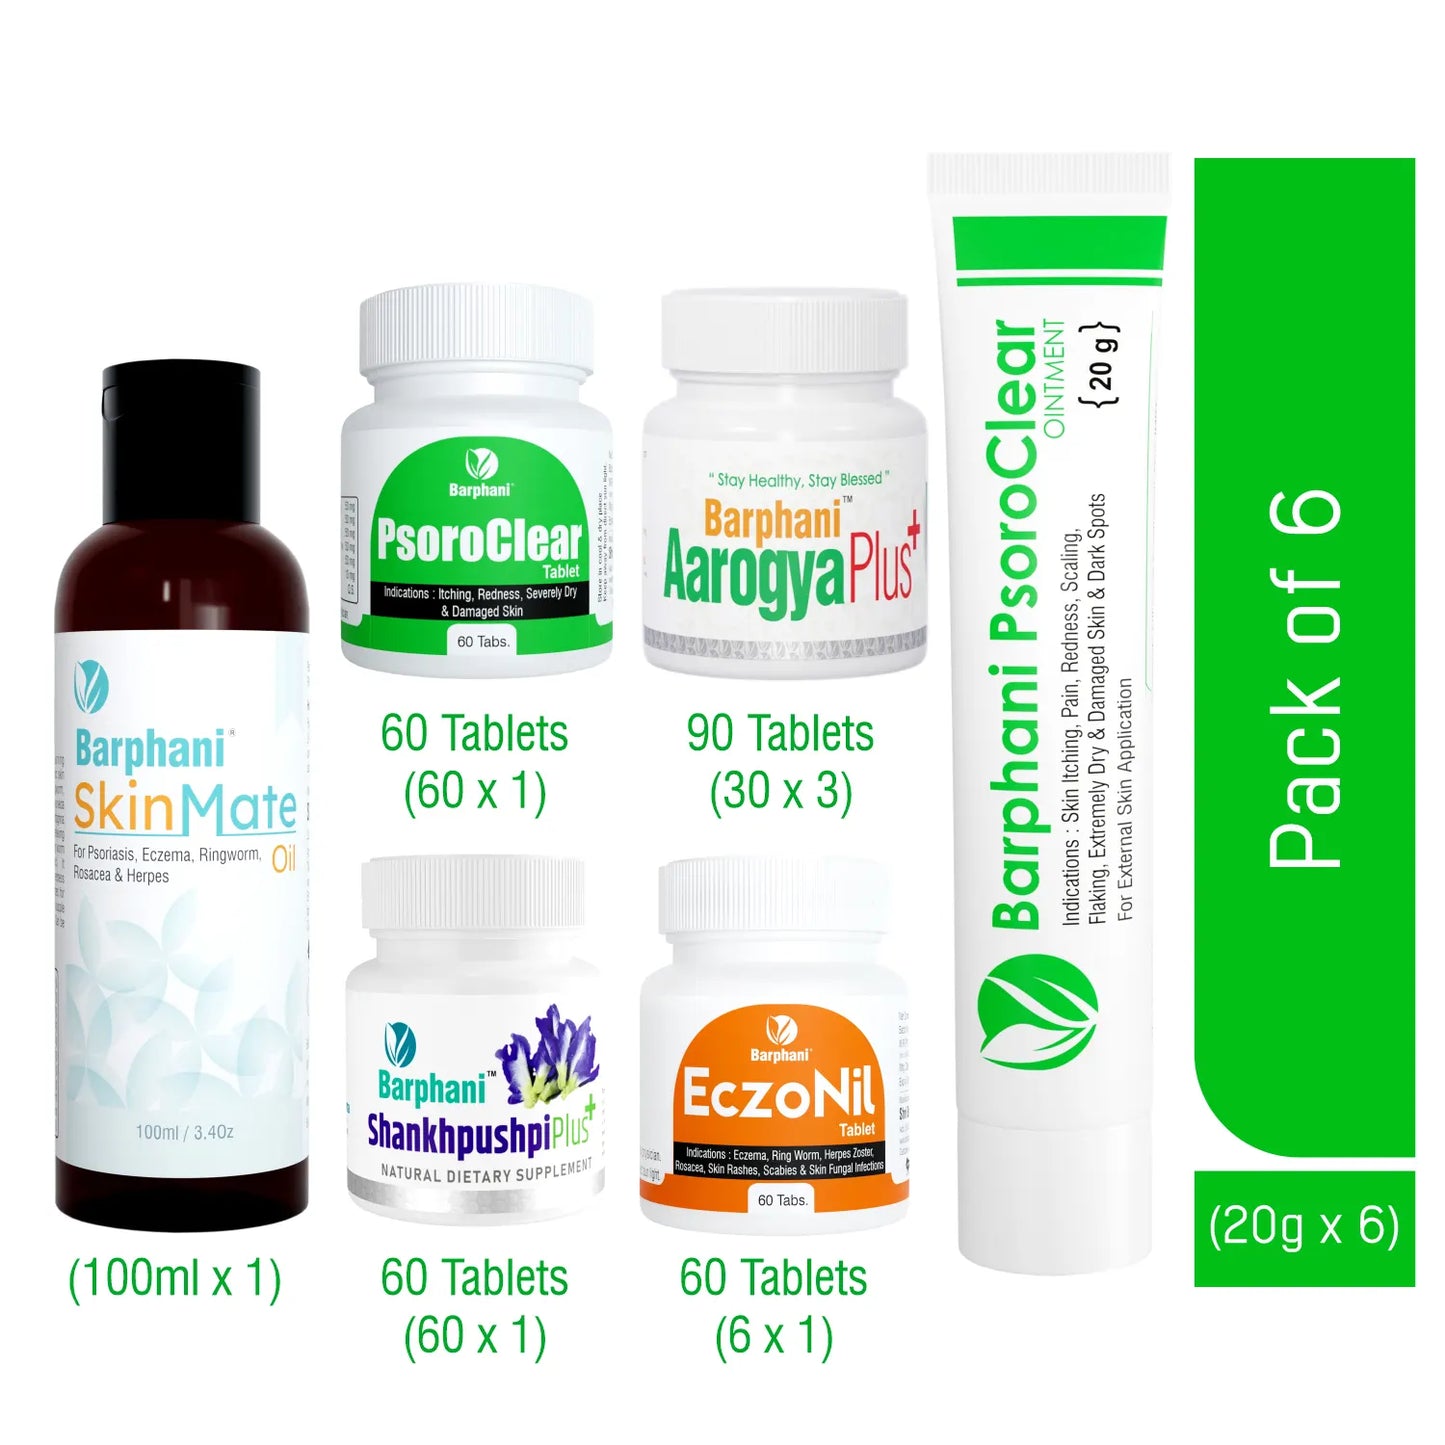 Barphani PsoroClear Kit4-Psoriasis Cream(6) PsoroClear Tab(60) EczoNil Tab (60) AarogyaPlus Tab(90) ShankhpushpiPlus Tab(60) SkinMate Oil (100ml) Longterm Psoro Relief